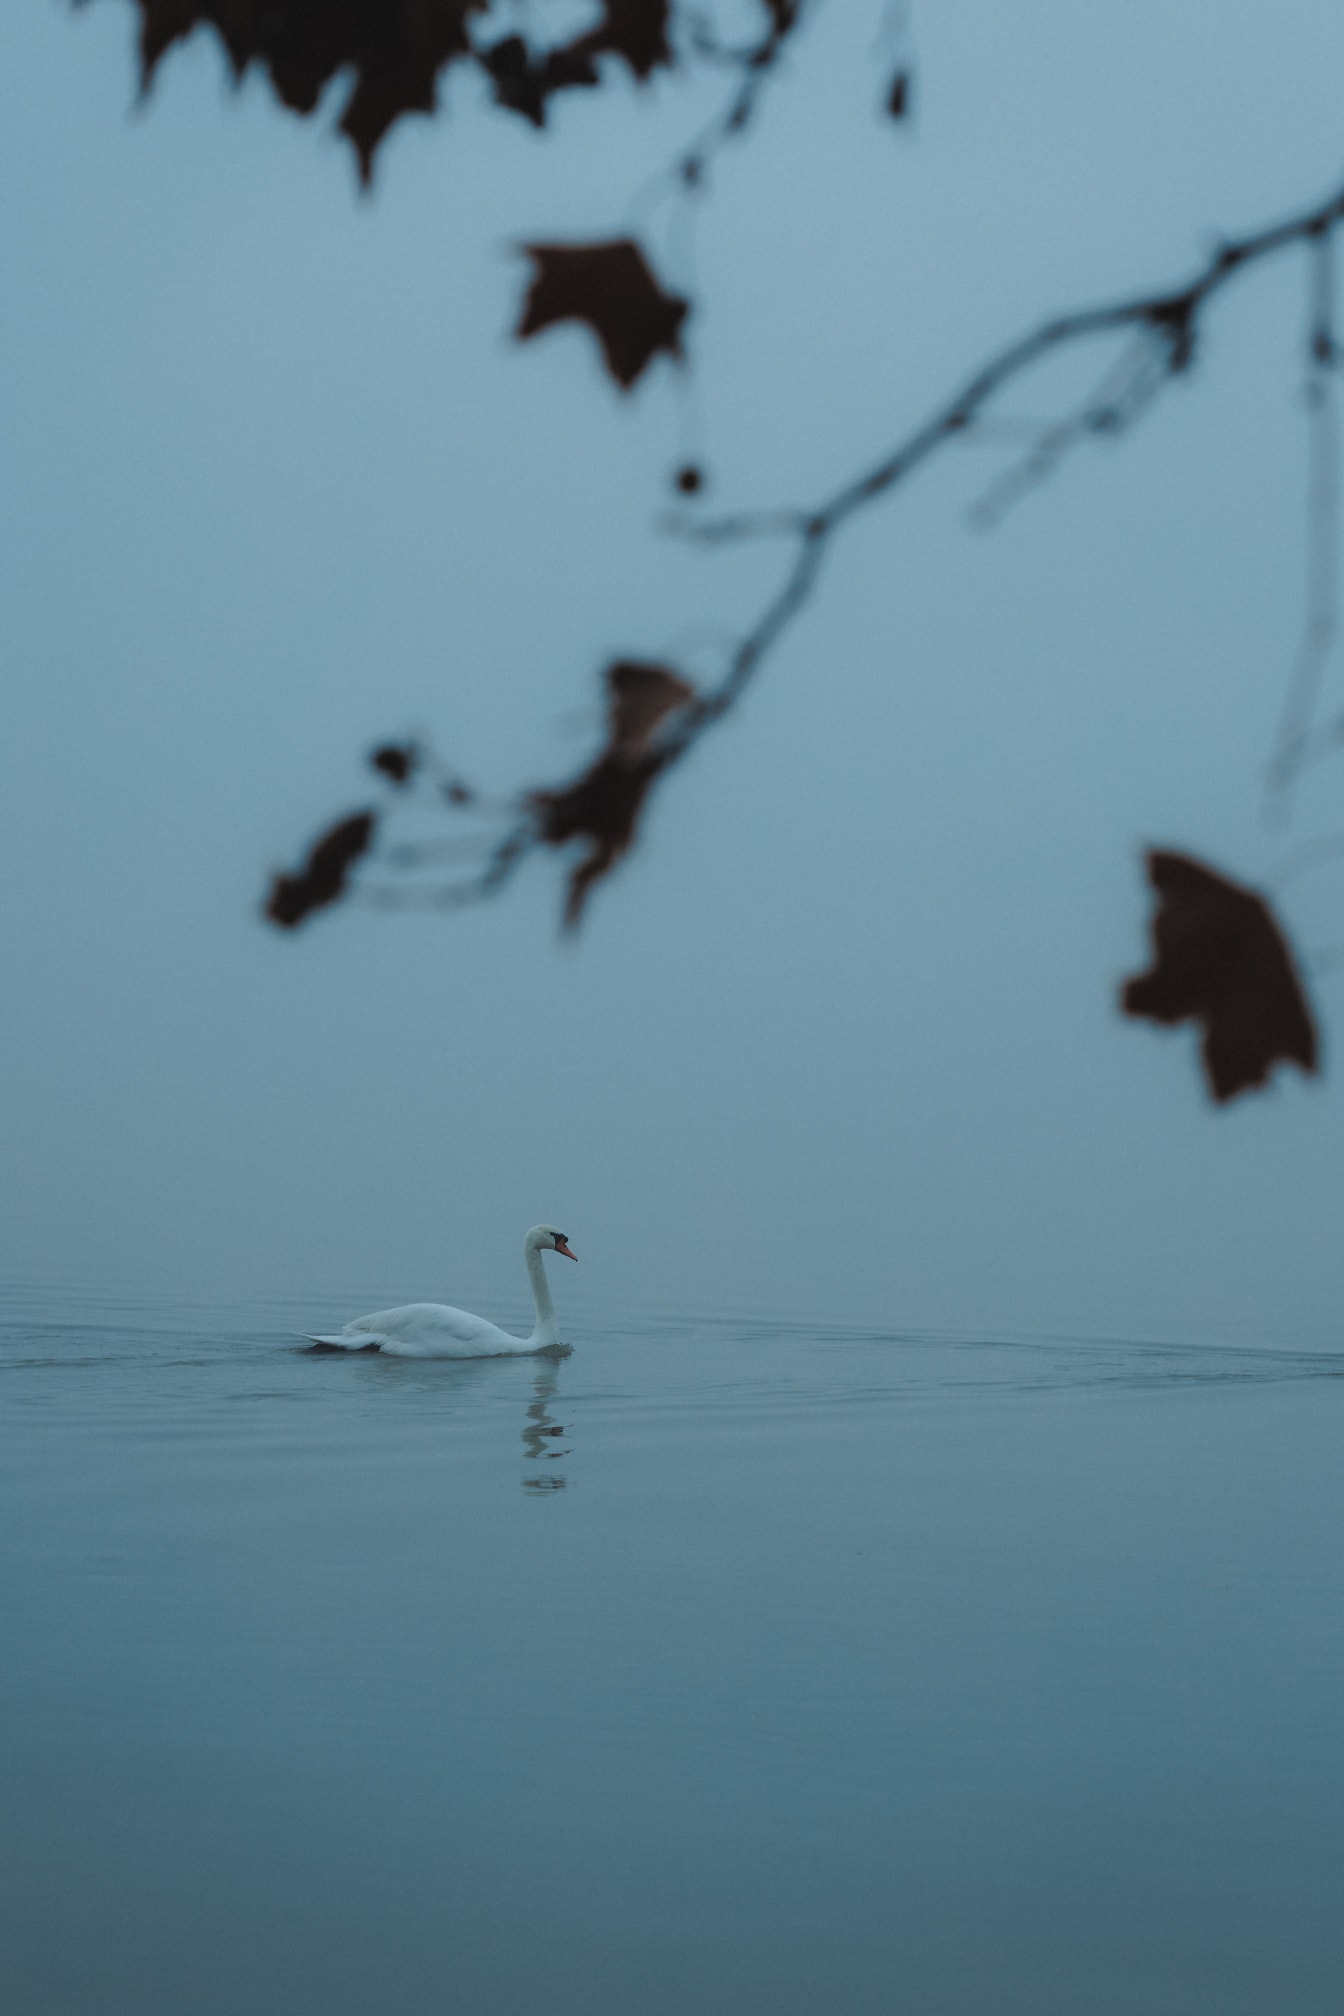 Cigno muto bianco (Cygnus olor) nuotare sull’acqua in una giornata nebbiosa